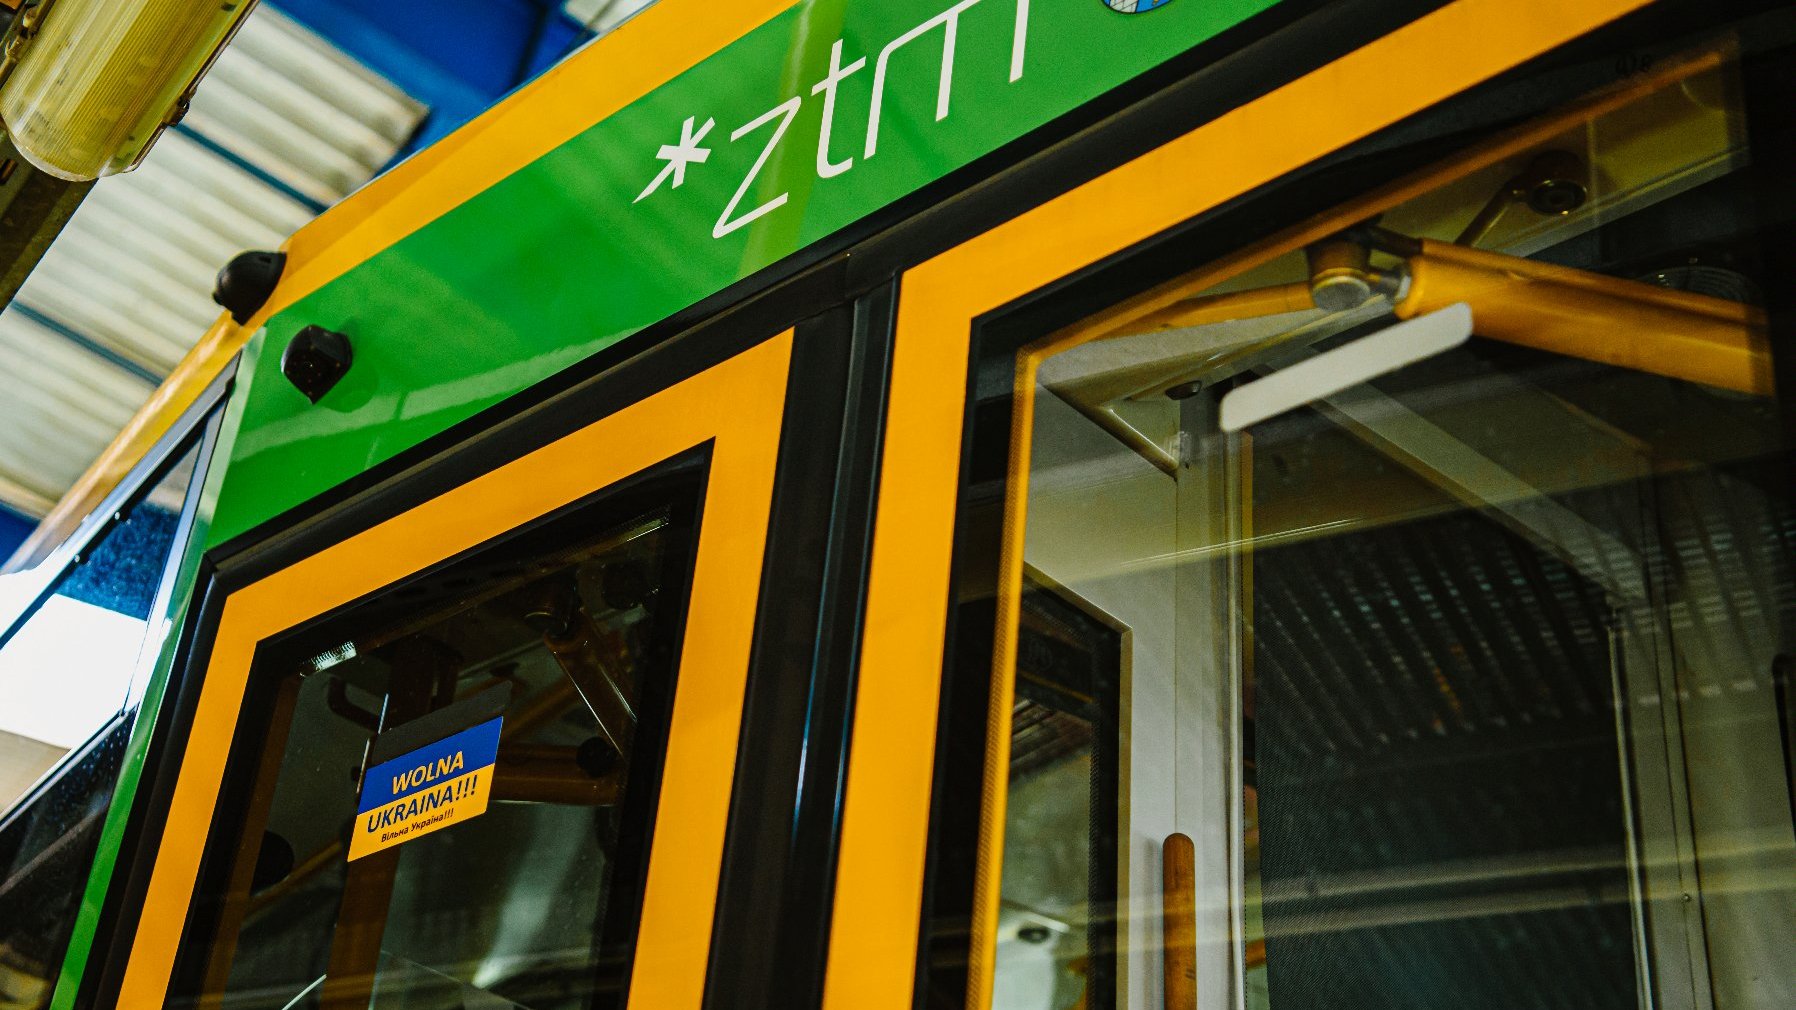 Naklejka na drzwiach tramwaju z napisem Wolna Ukraina